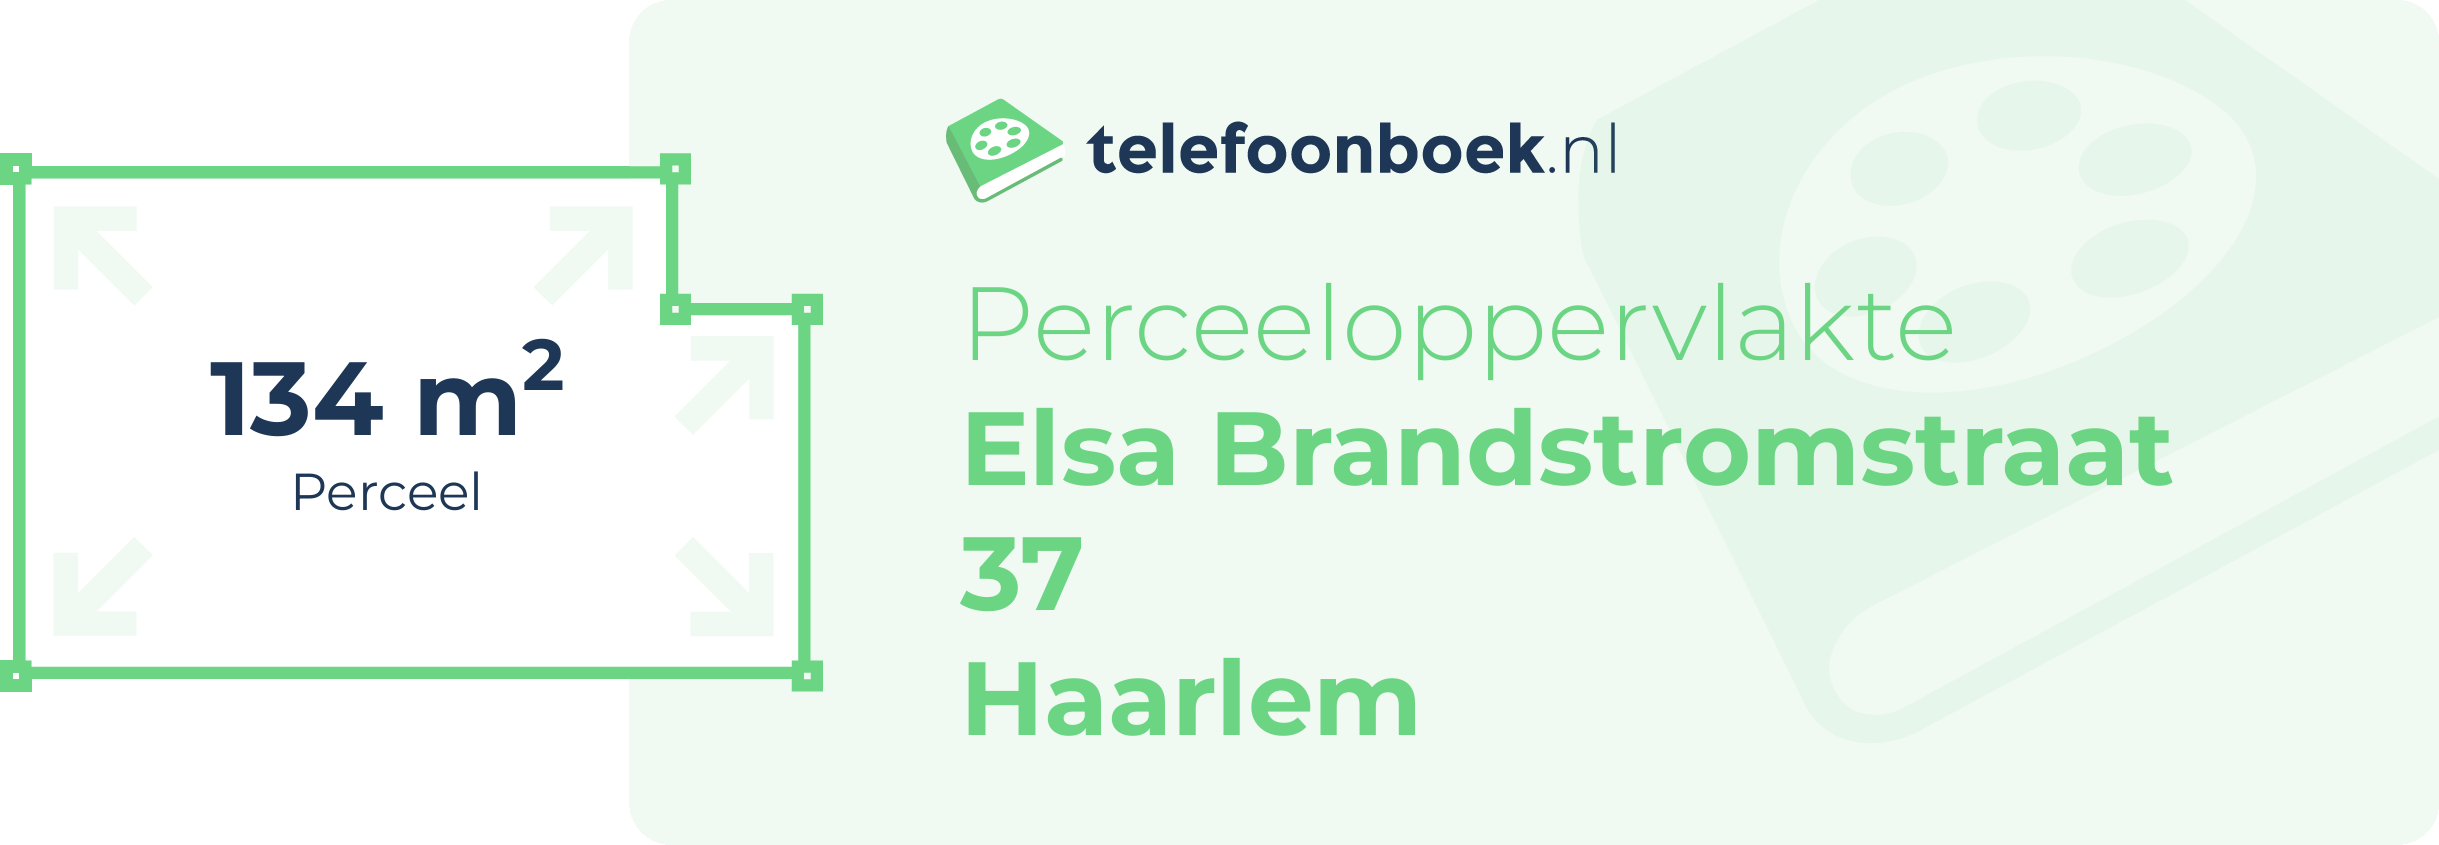 Perceeloppervlakte Elsa Brandstromstraat 37 Haarlem